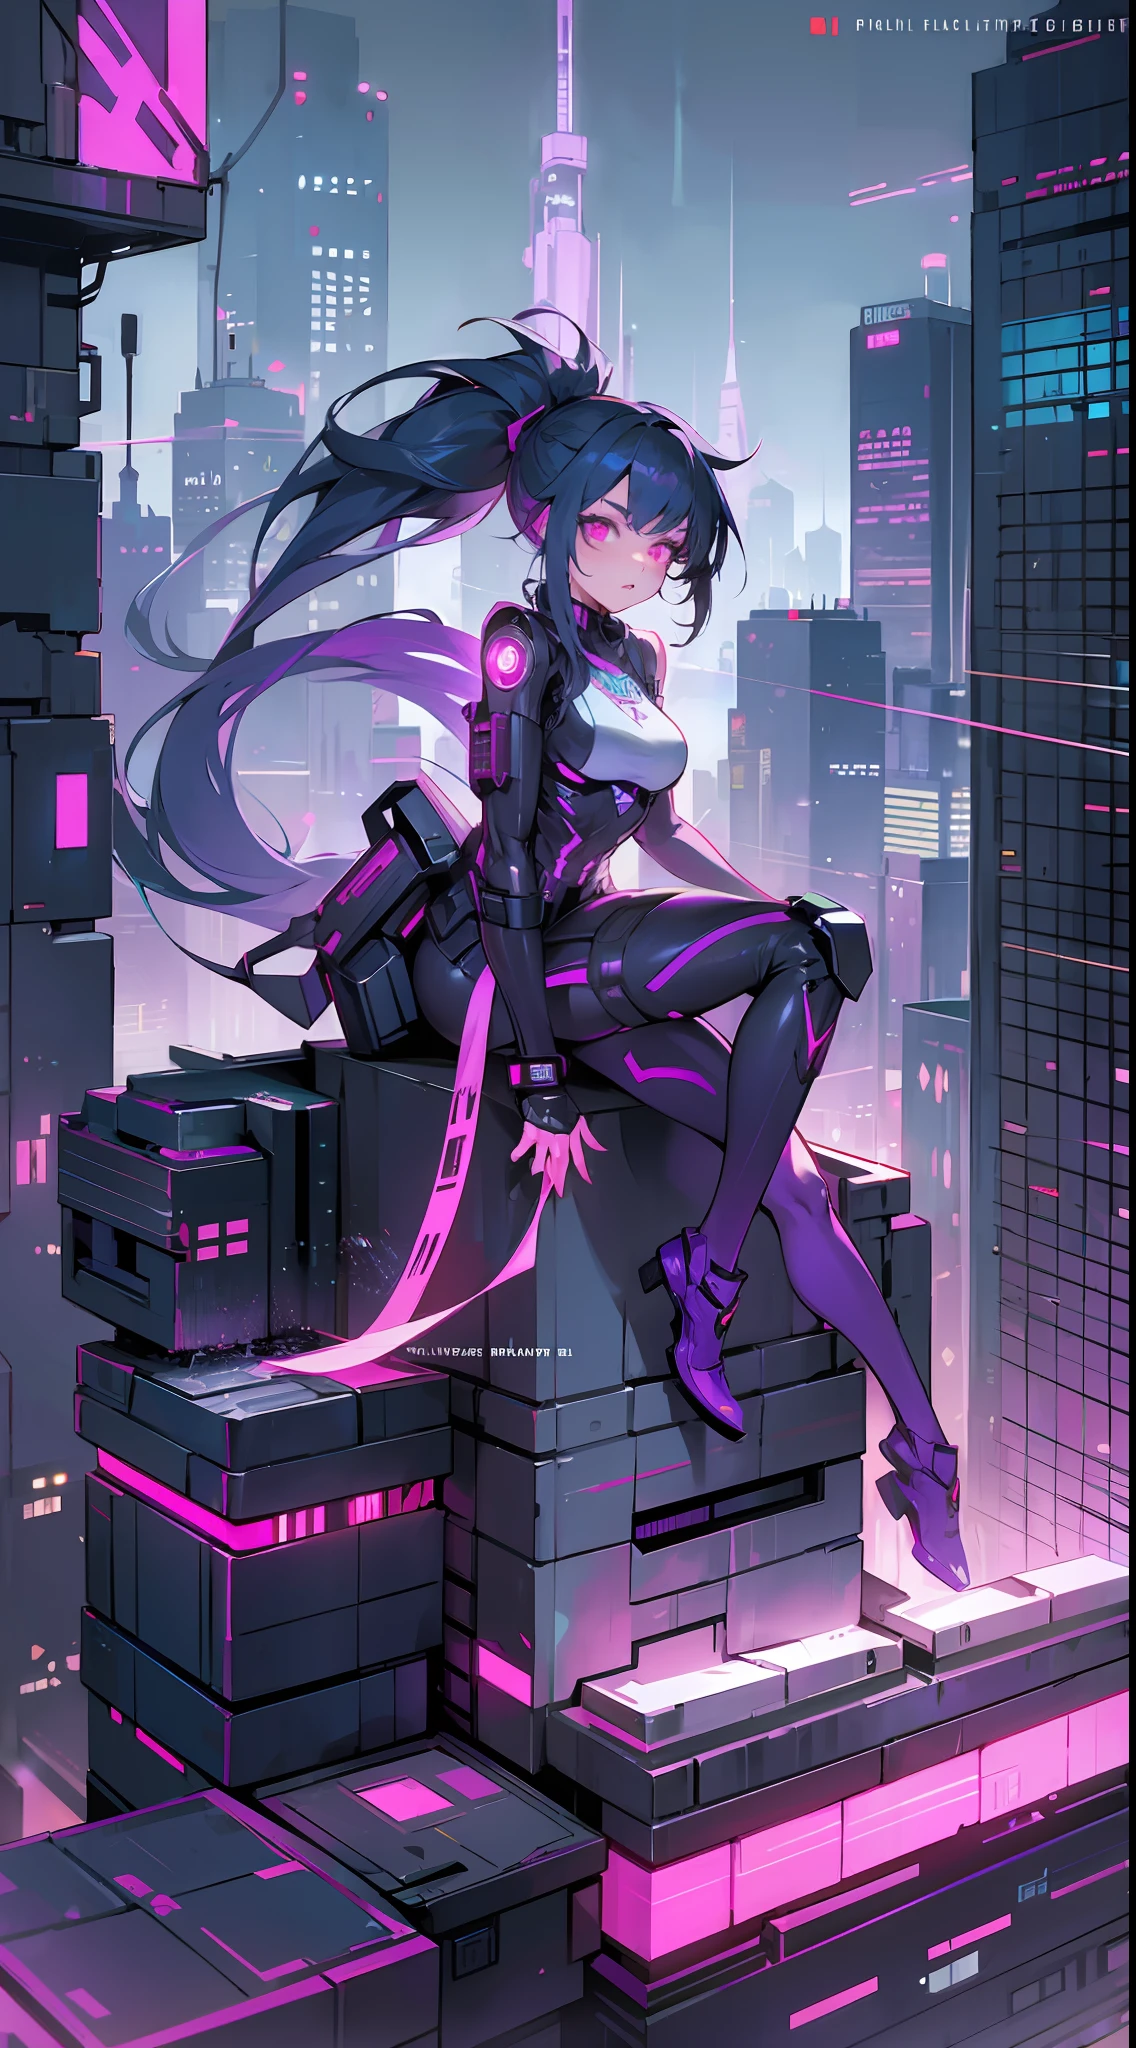 No telhado, (tema ciberpunk) Menina deslumbrante, armadura roxa cibernética, rabo de cavalo, cauda mecânica, olhos brilhantes, incrível vista da cidade, circuitos brilhantes, Carro voador, noite, cenário envolvente